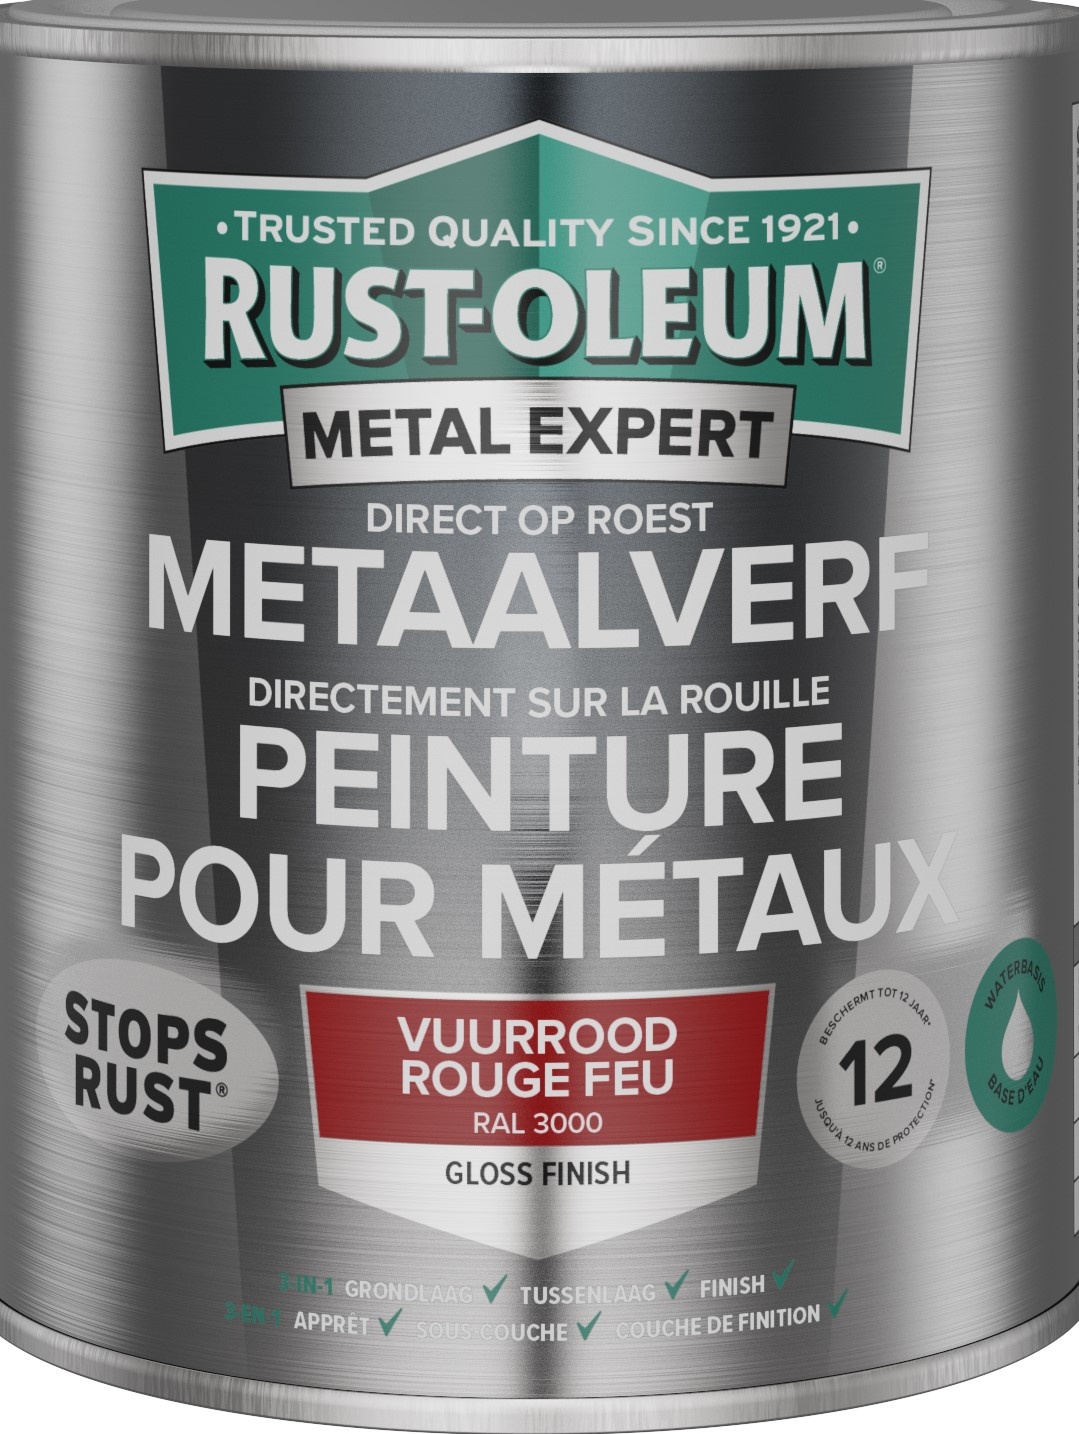 Rust-oleum Metalexpert Direct Op Roest Metaalverf Gloss - Waterbasis - 3000 250 Ml